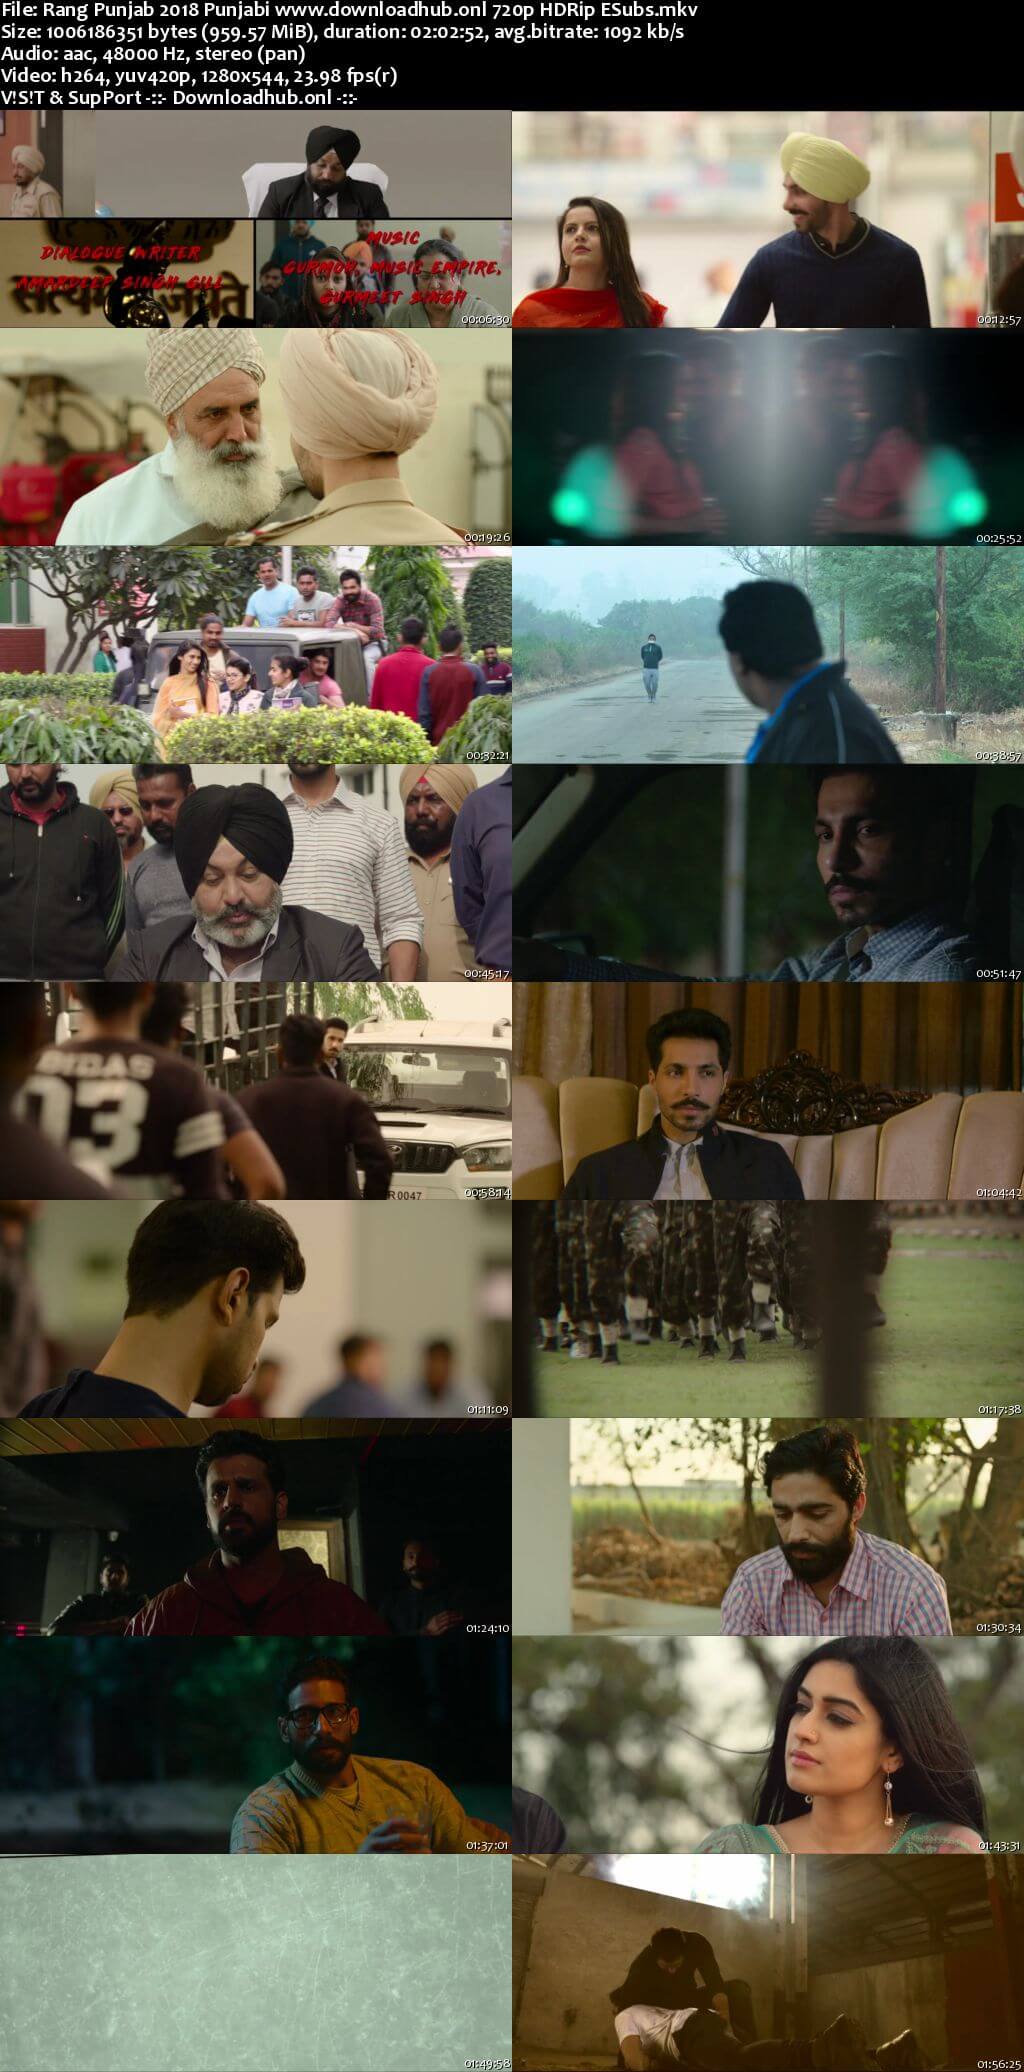 Rang Punjab 2018 Punjabi 720p HDRip ESubs